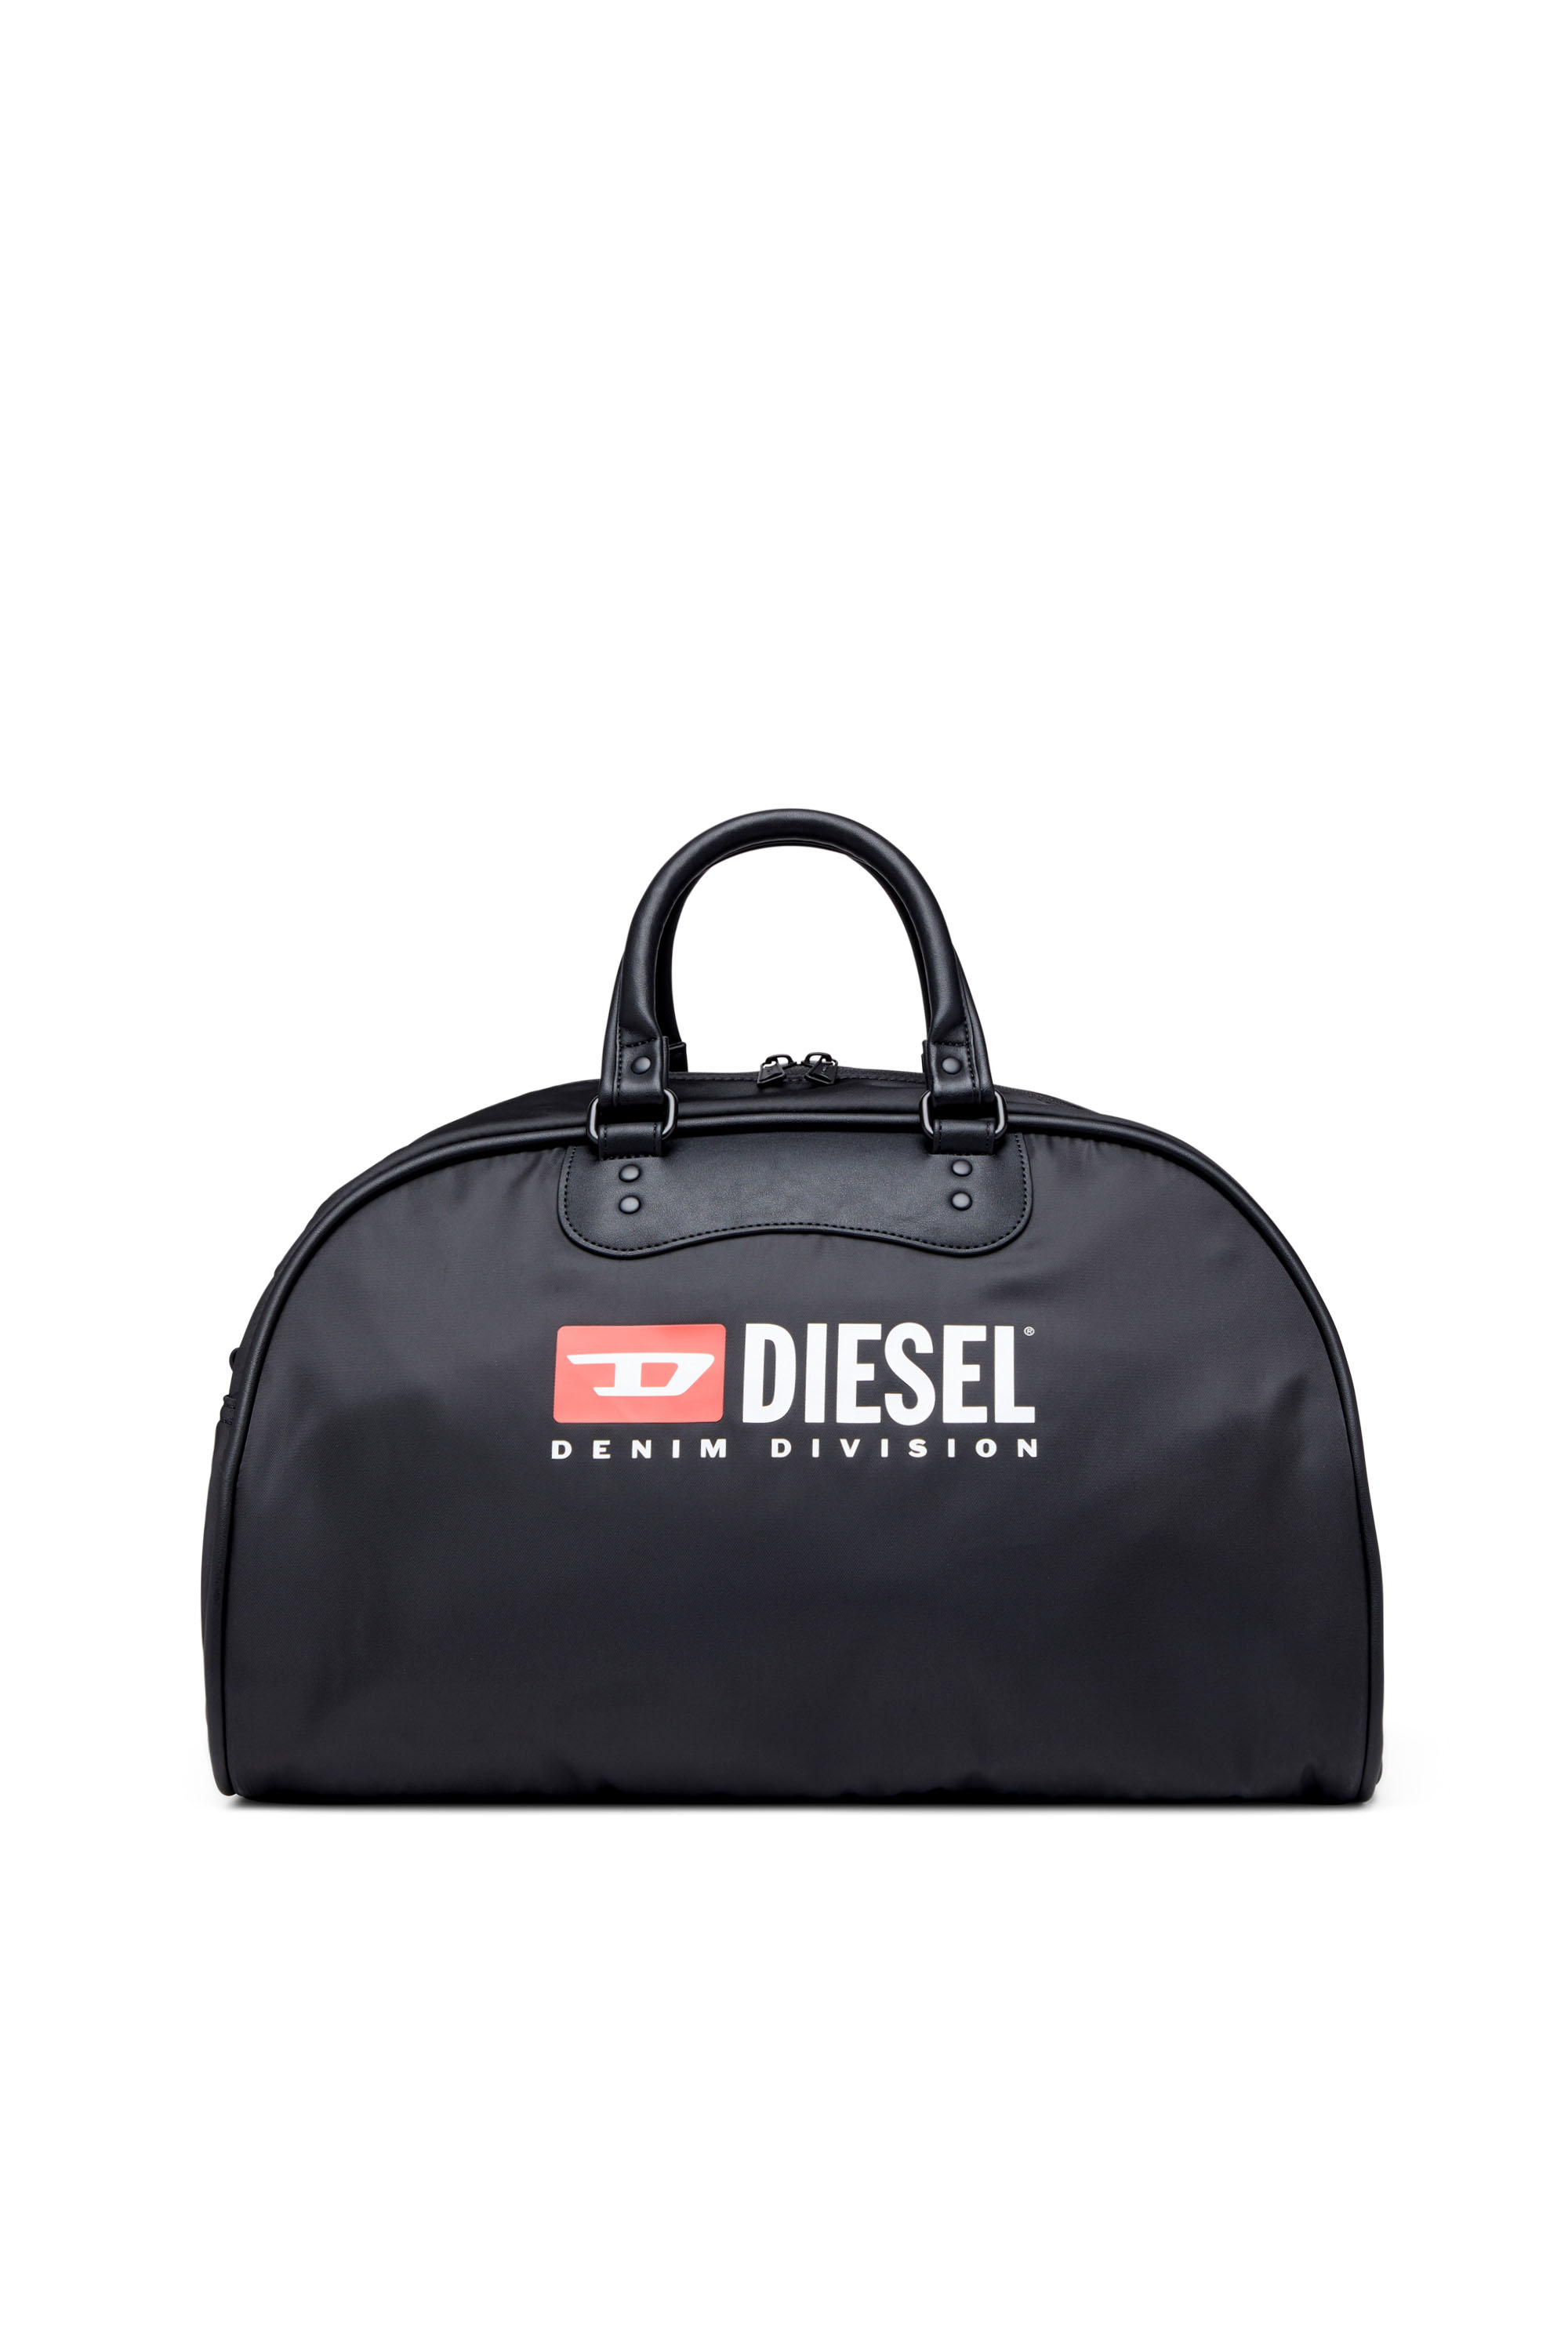 Diesel - RINKE DUFFLE, Black - Image 1